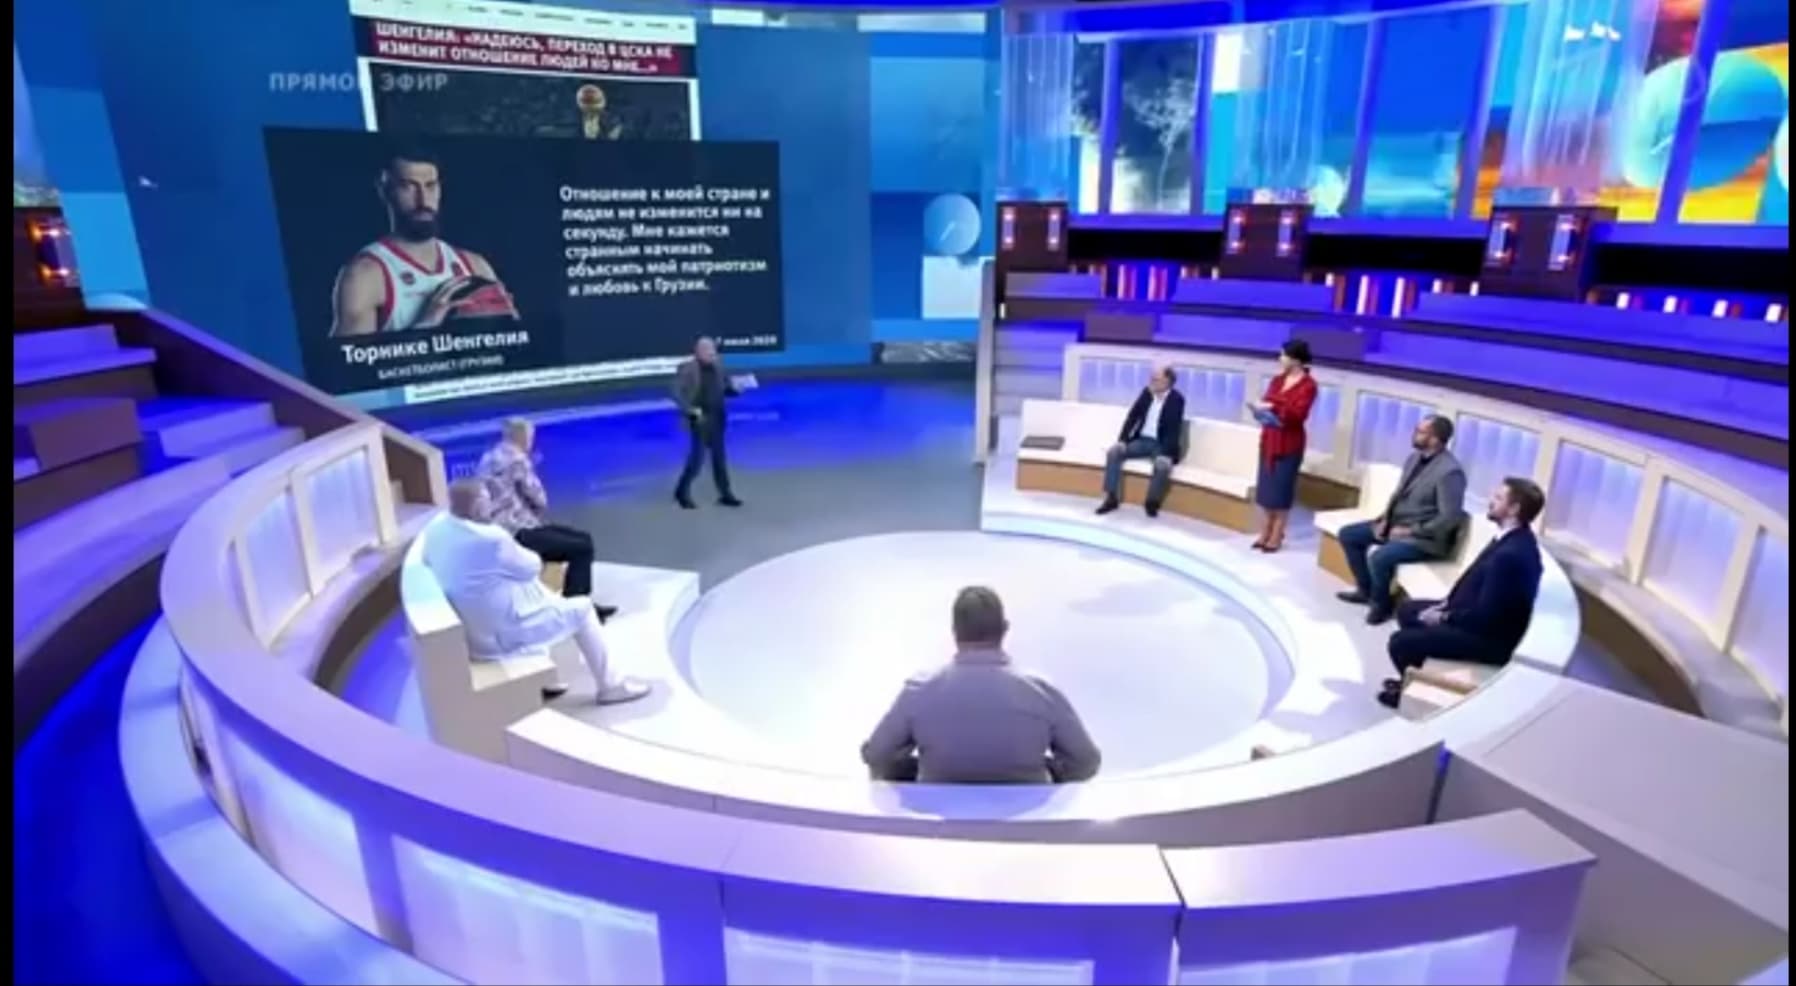 1tv Shengelia новости Первый канал, Торнике Шенгелия